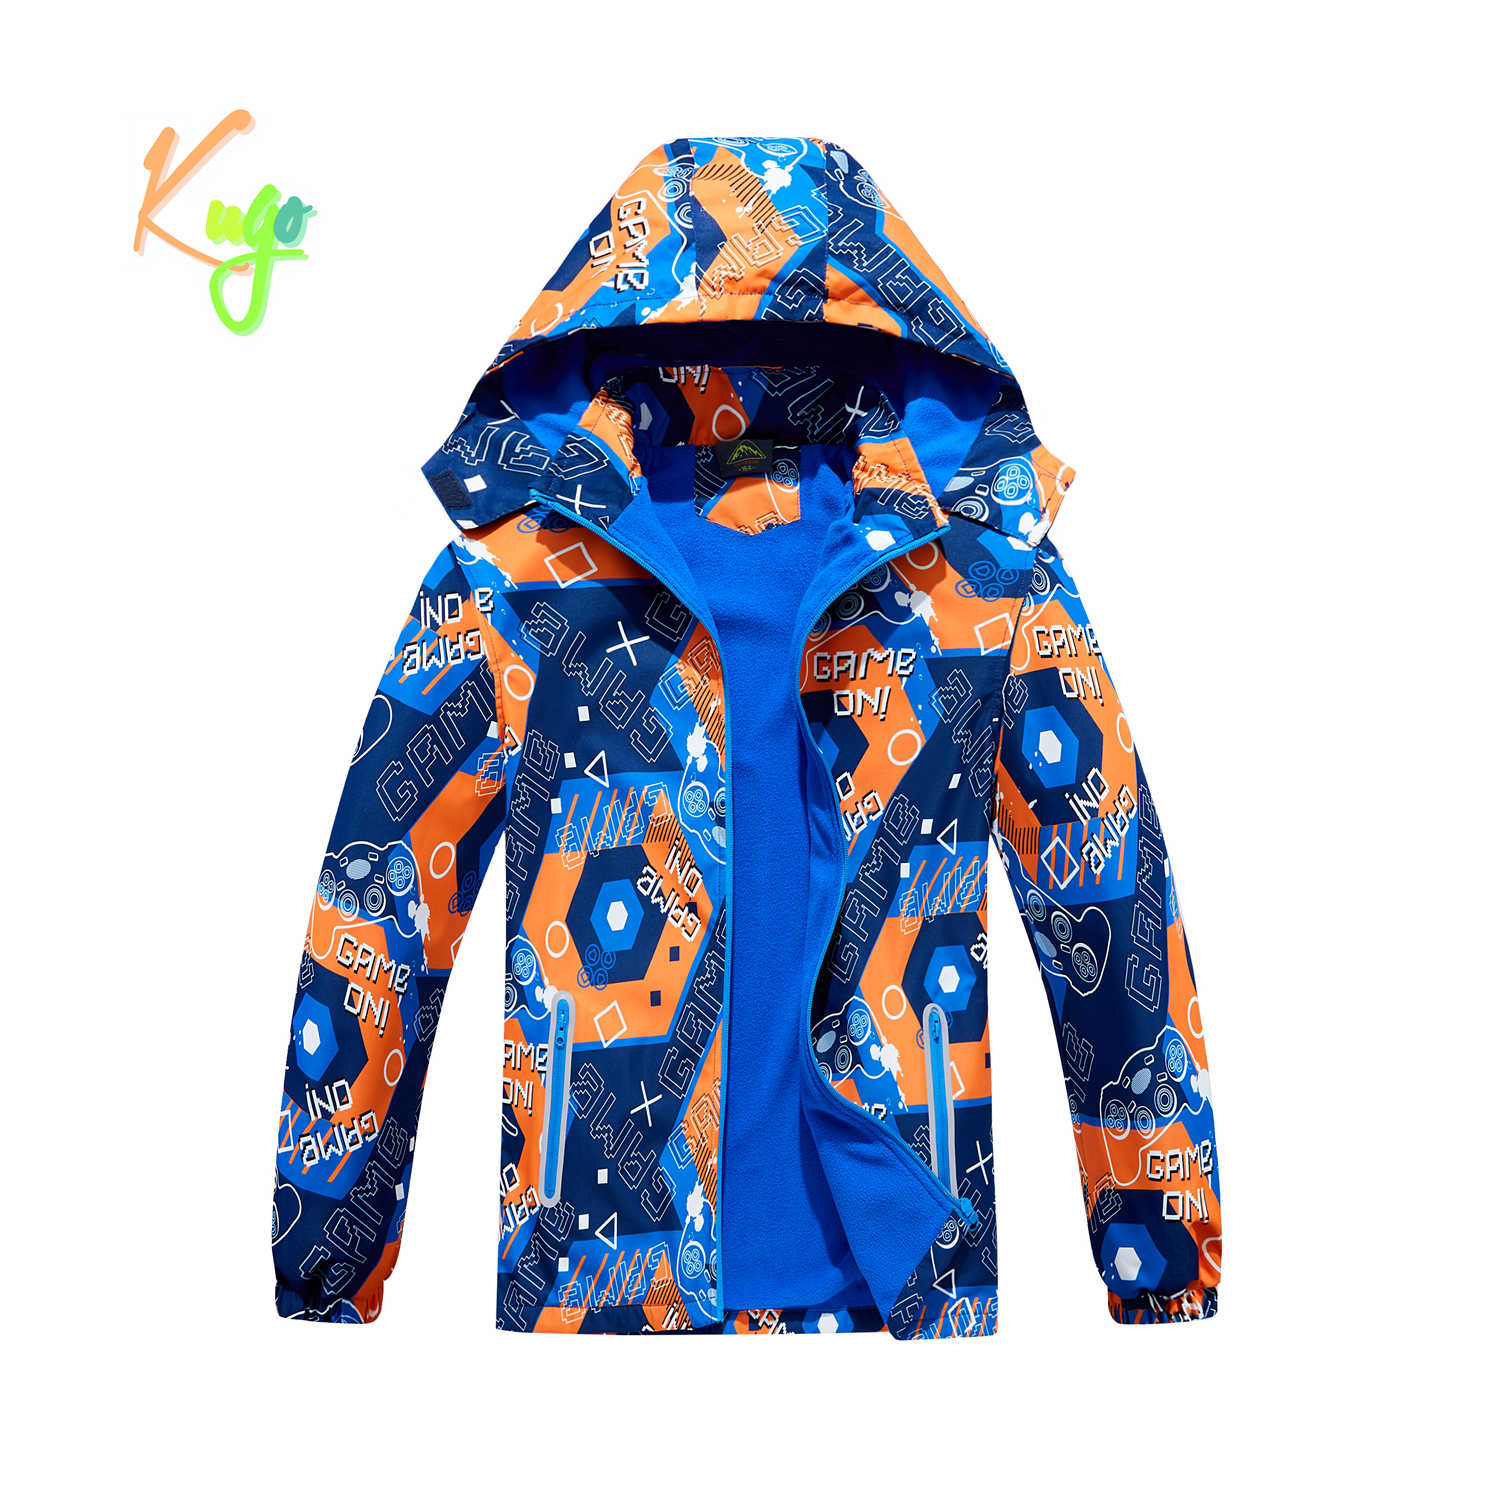 Chlapecká podzimní bunda, zateplená - KUGO B2859, modrá / oranžová Barva: Modrá, Velikost: 146